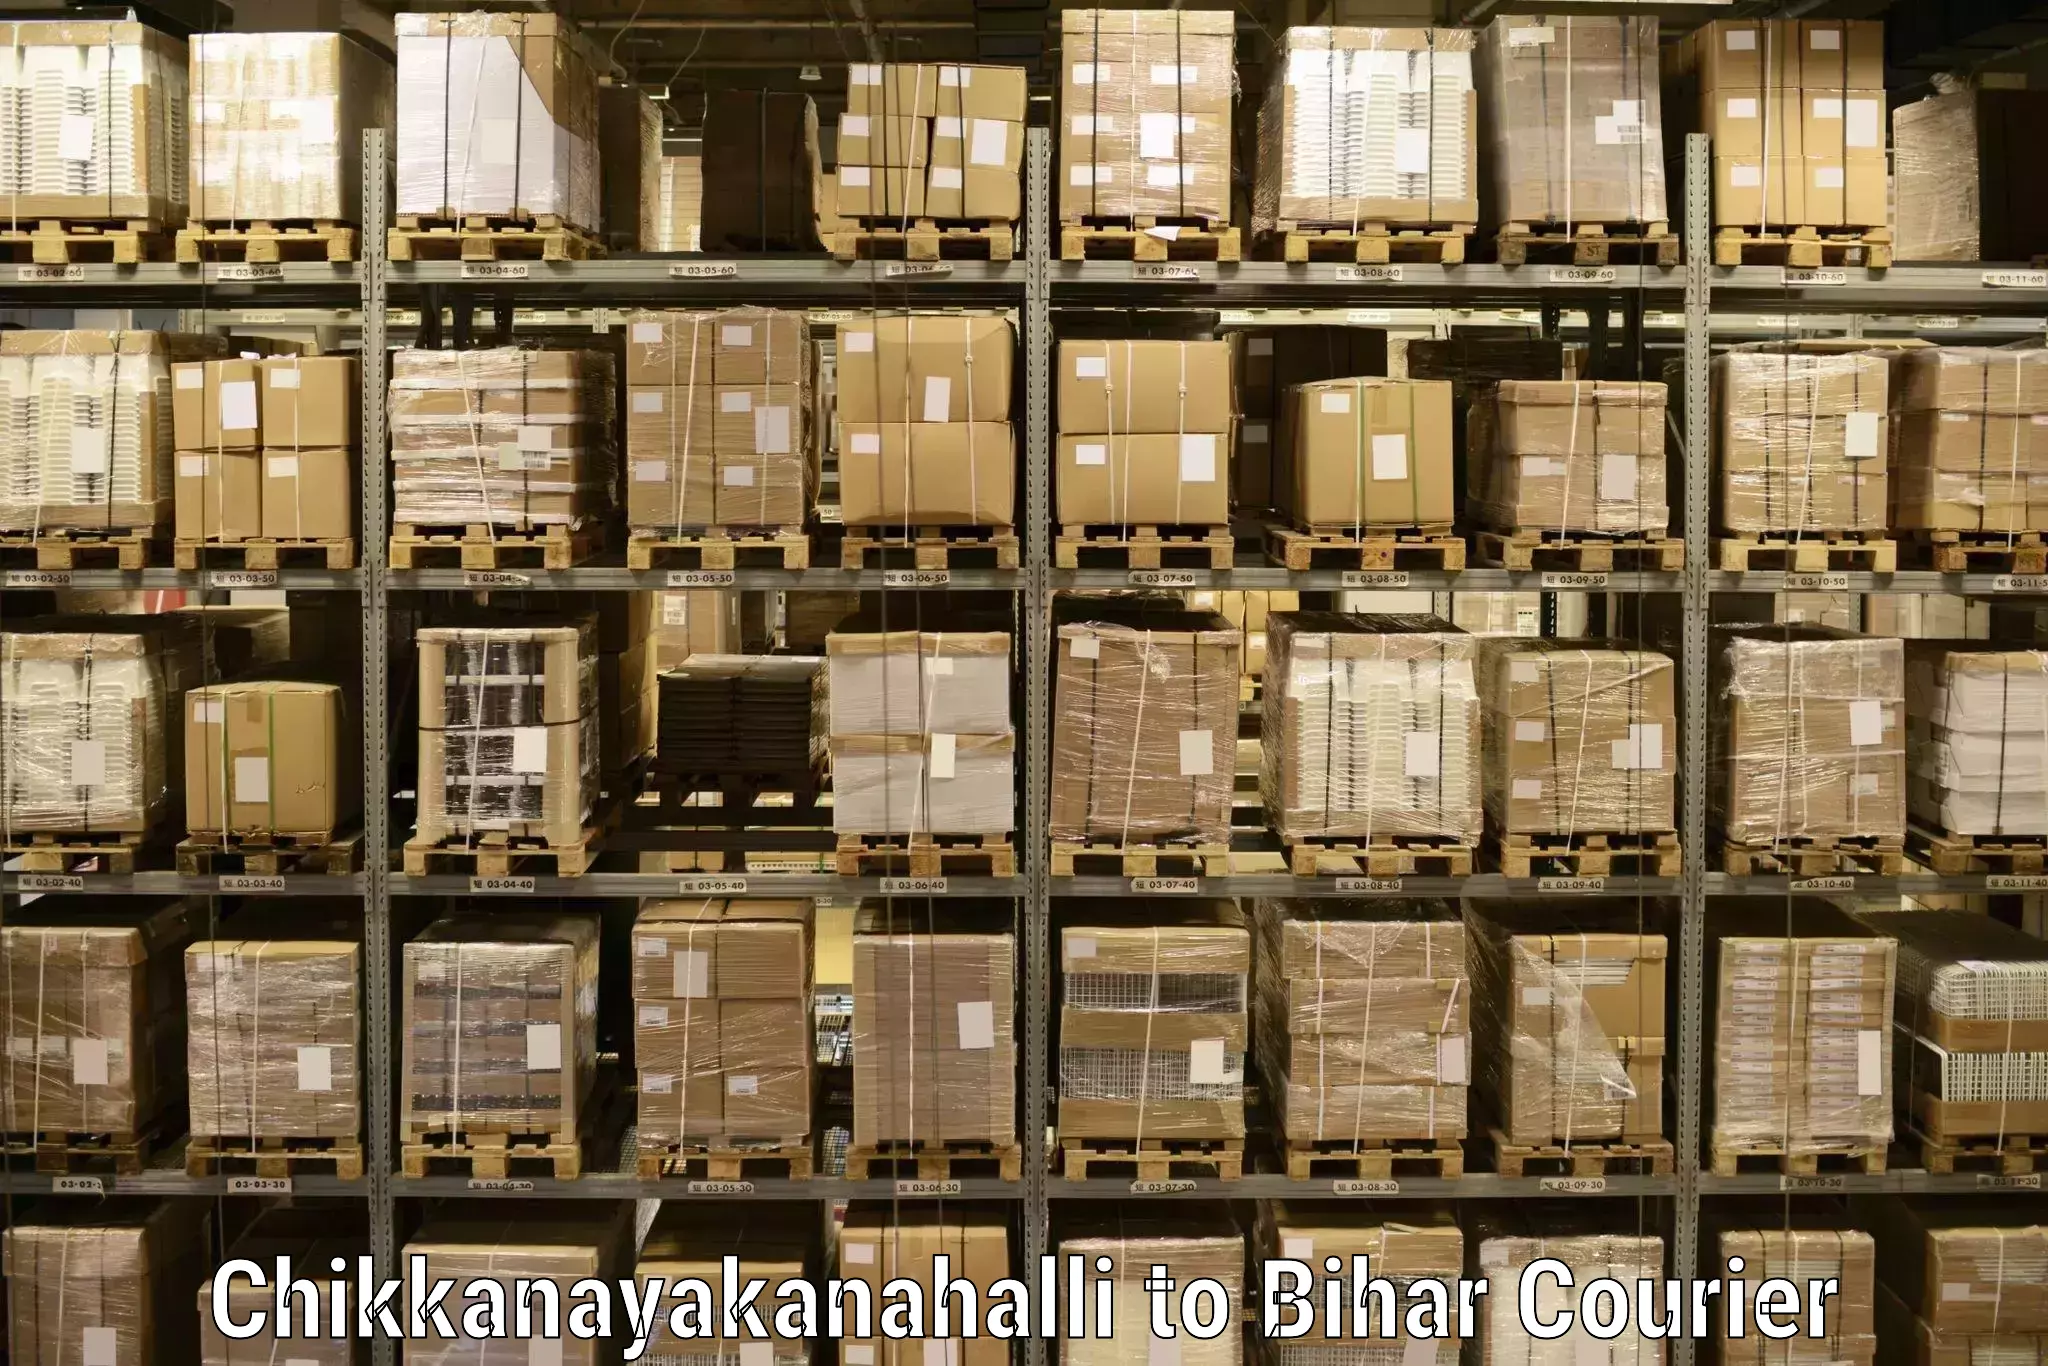 High-capacity parcel service Chikkanayakanahalli to Punsia